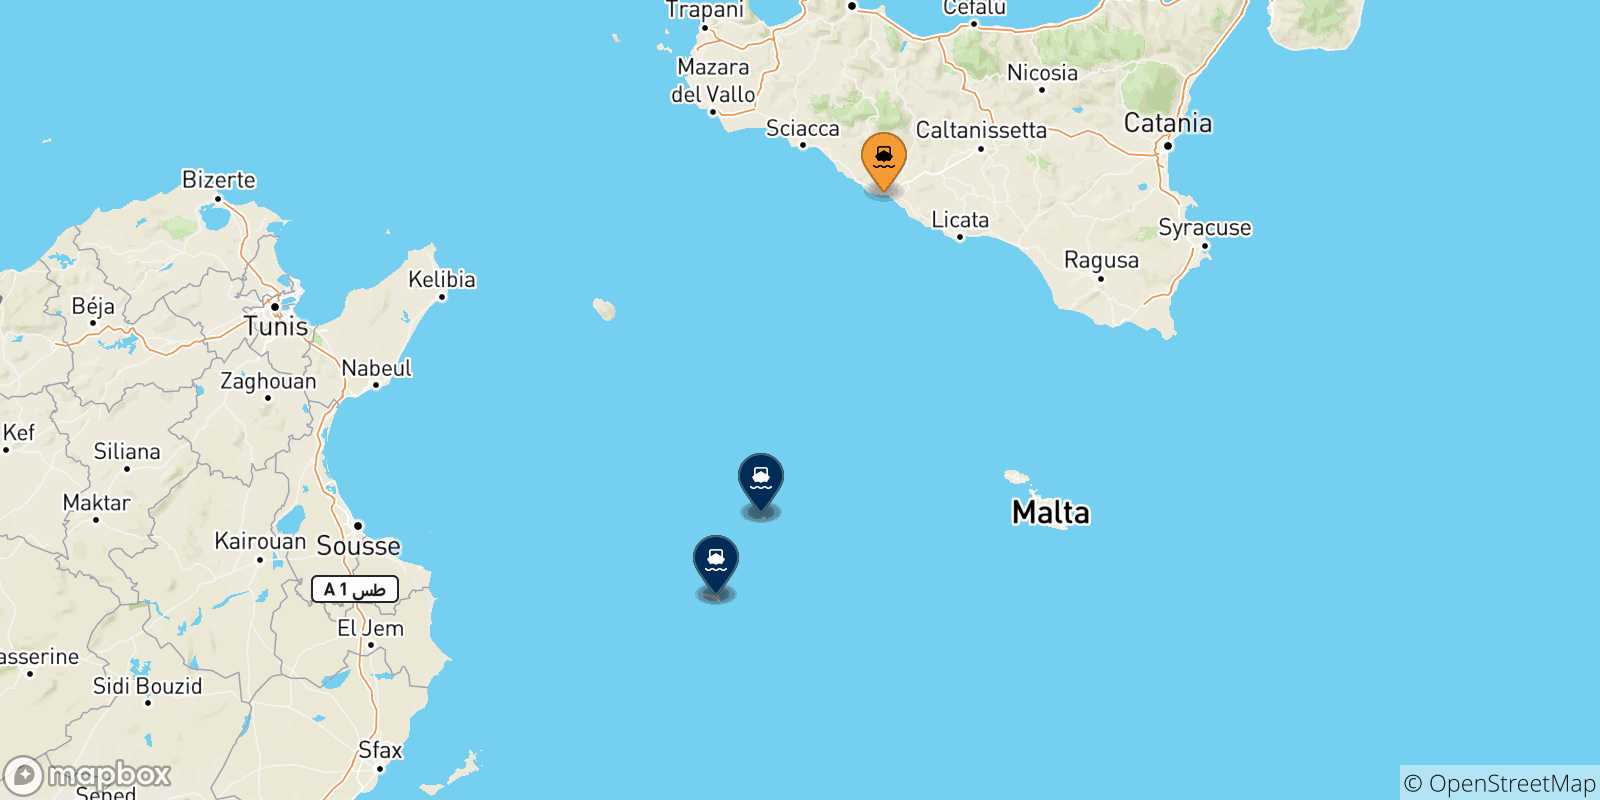 Mappa dei porti collegati con le Isole Pelagie